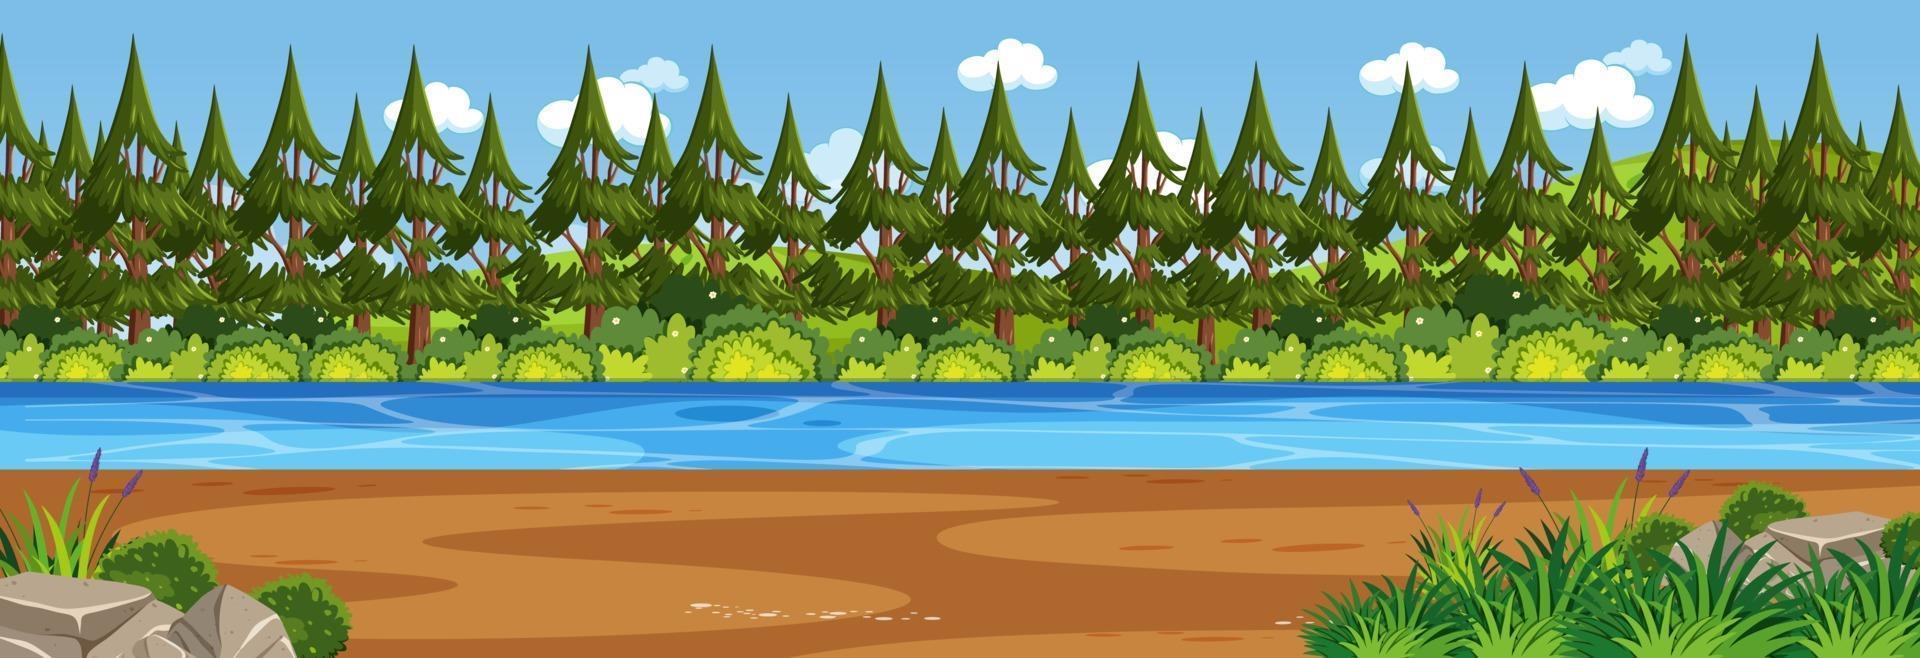 scena del paesaggio panoramico con il fiume attraverso la foresta vettore